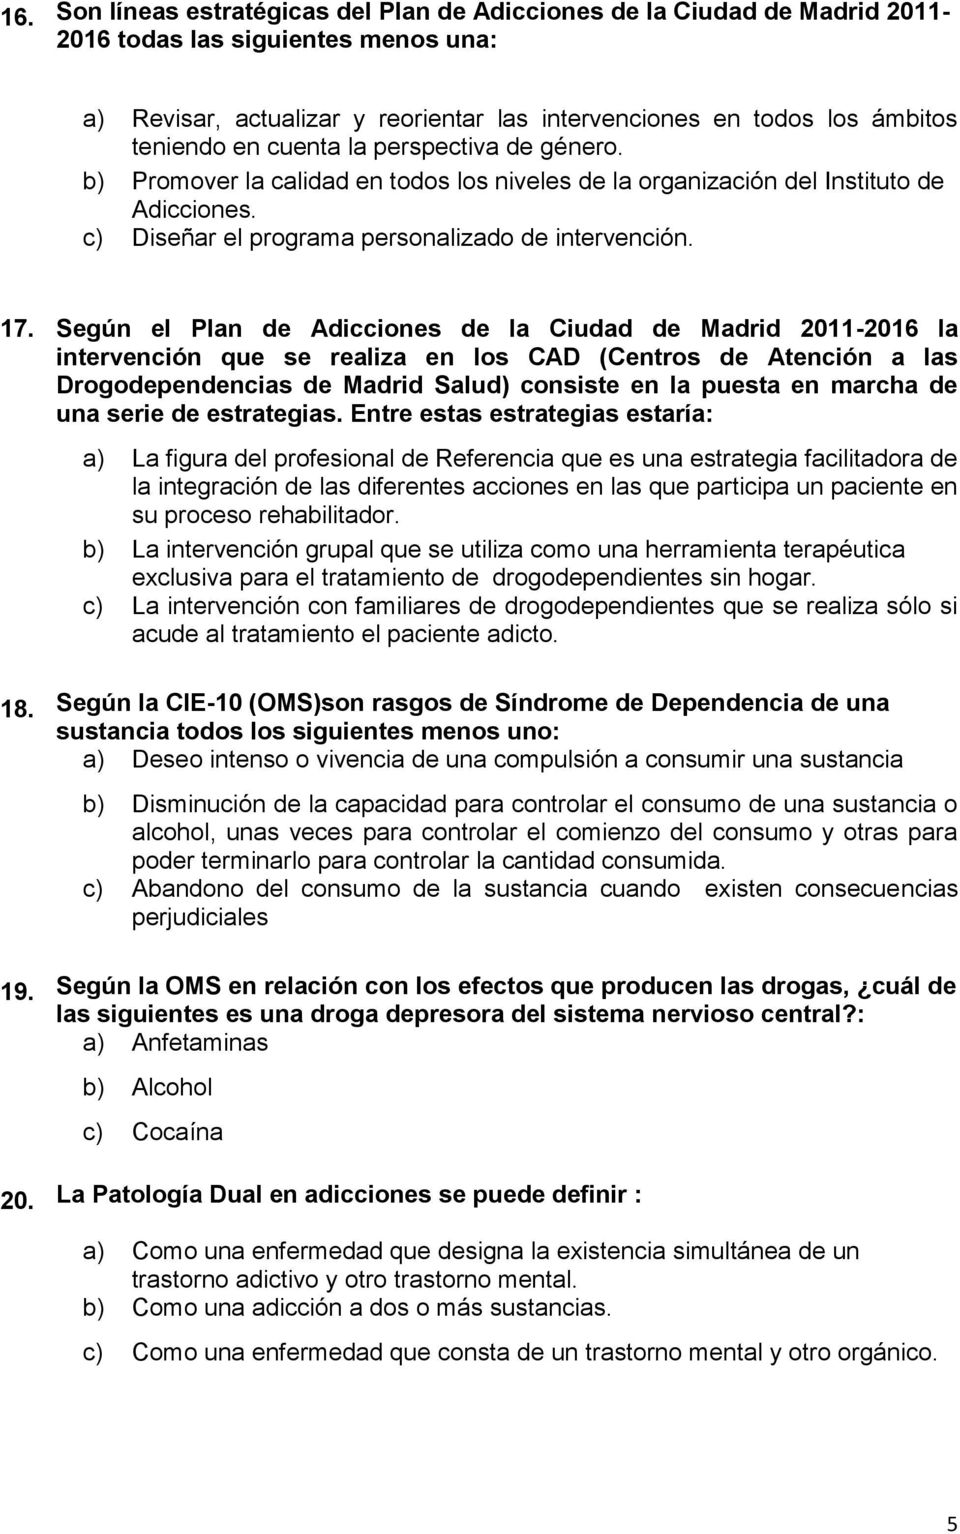 Según el Plan de Adicciones de la Ciudad de Madrid 2011-2016 la intervención que se realiza en los CAD (Centros de Atención a las Drogodependencias de Madrid Salud) consiste en la puesta en marcha de